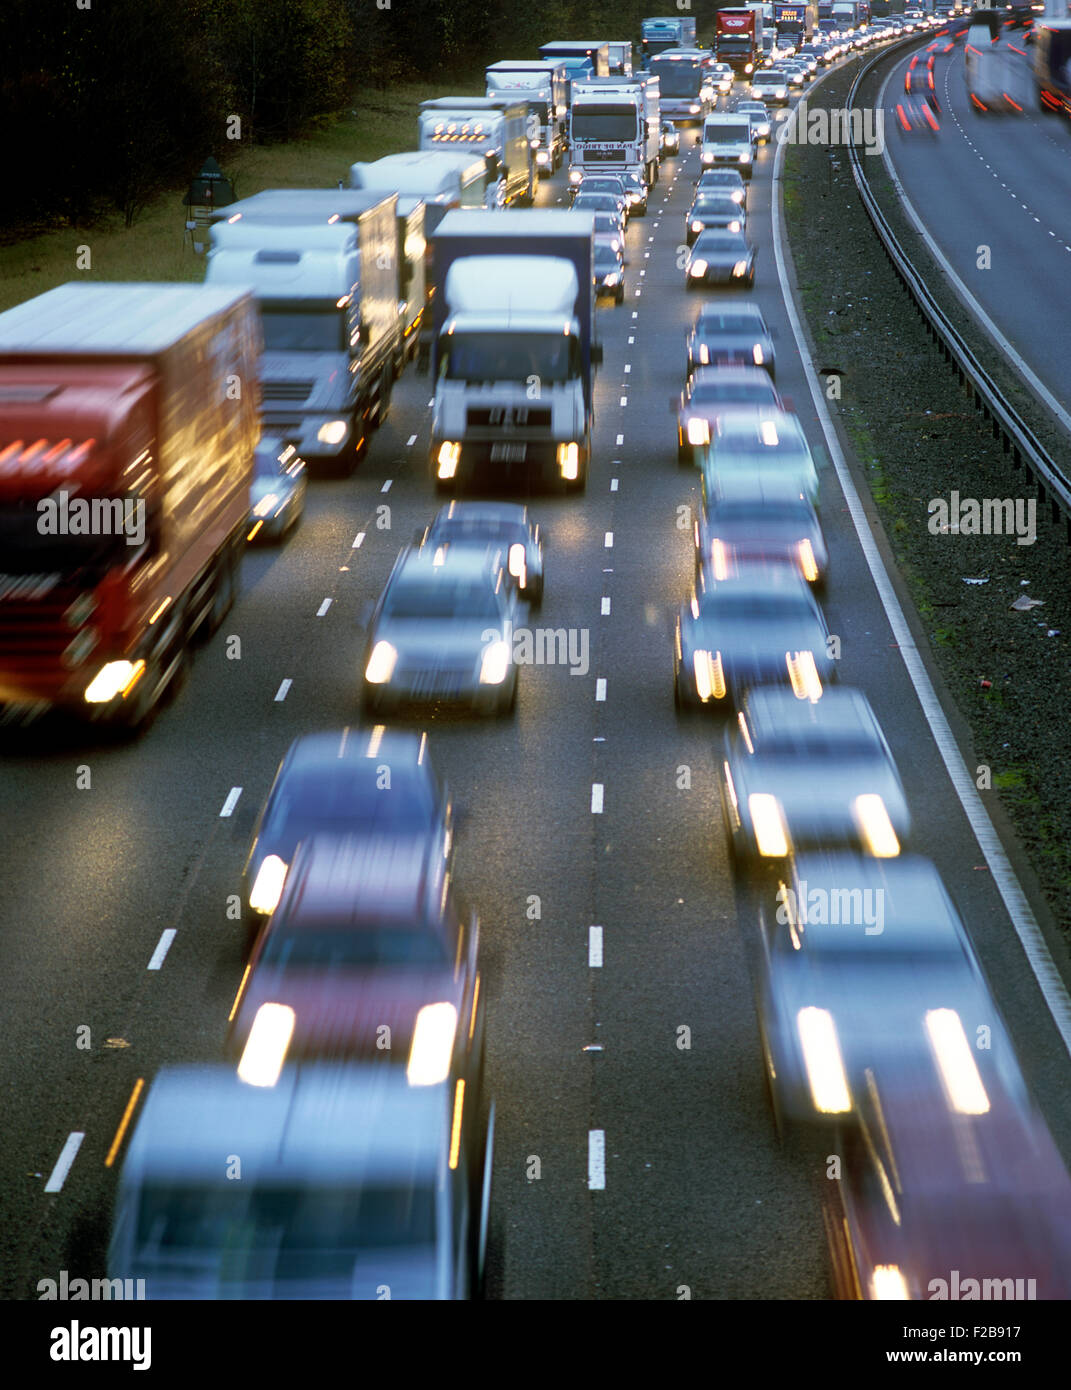 Stoßstange an Stoßstange, Nose-to-Tail Schwerverkehr auf einer Autobahn bei schlechten Lichtverhältnissen... Stockfoto